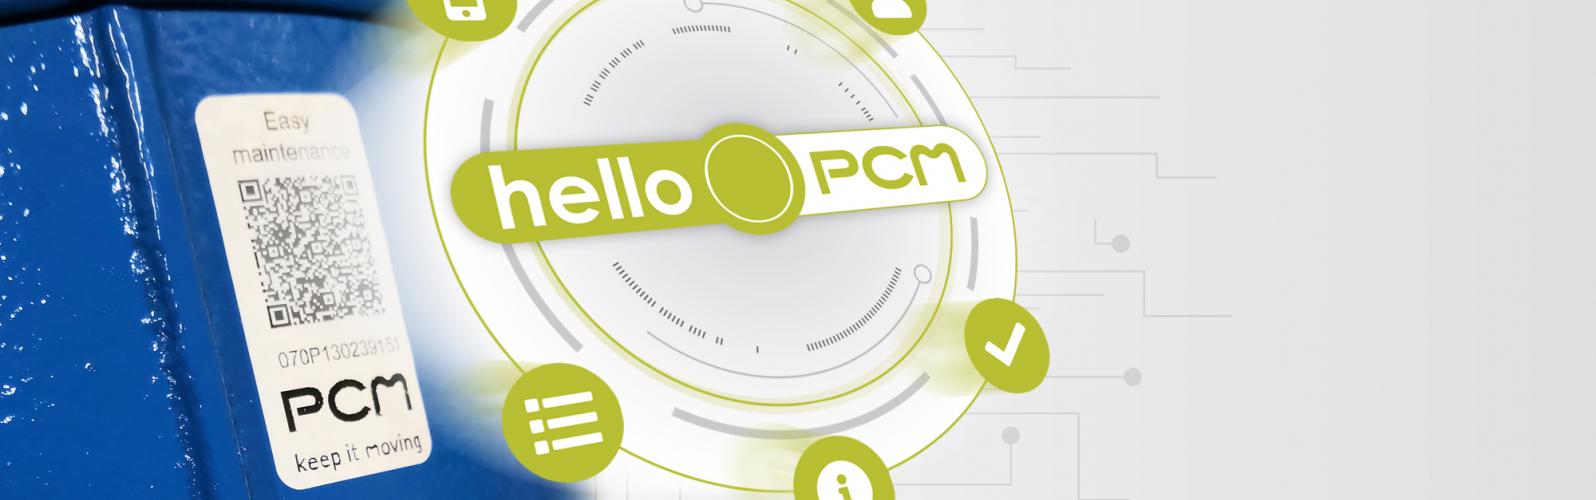 HelloPCM - Applicazione digitale